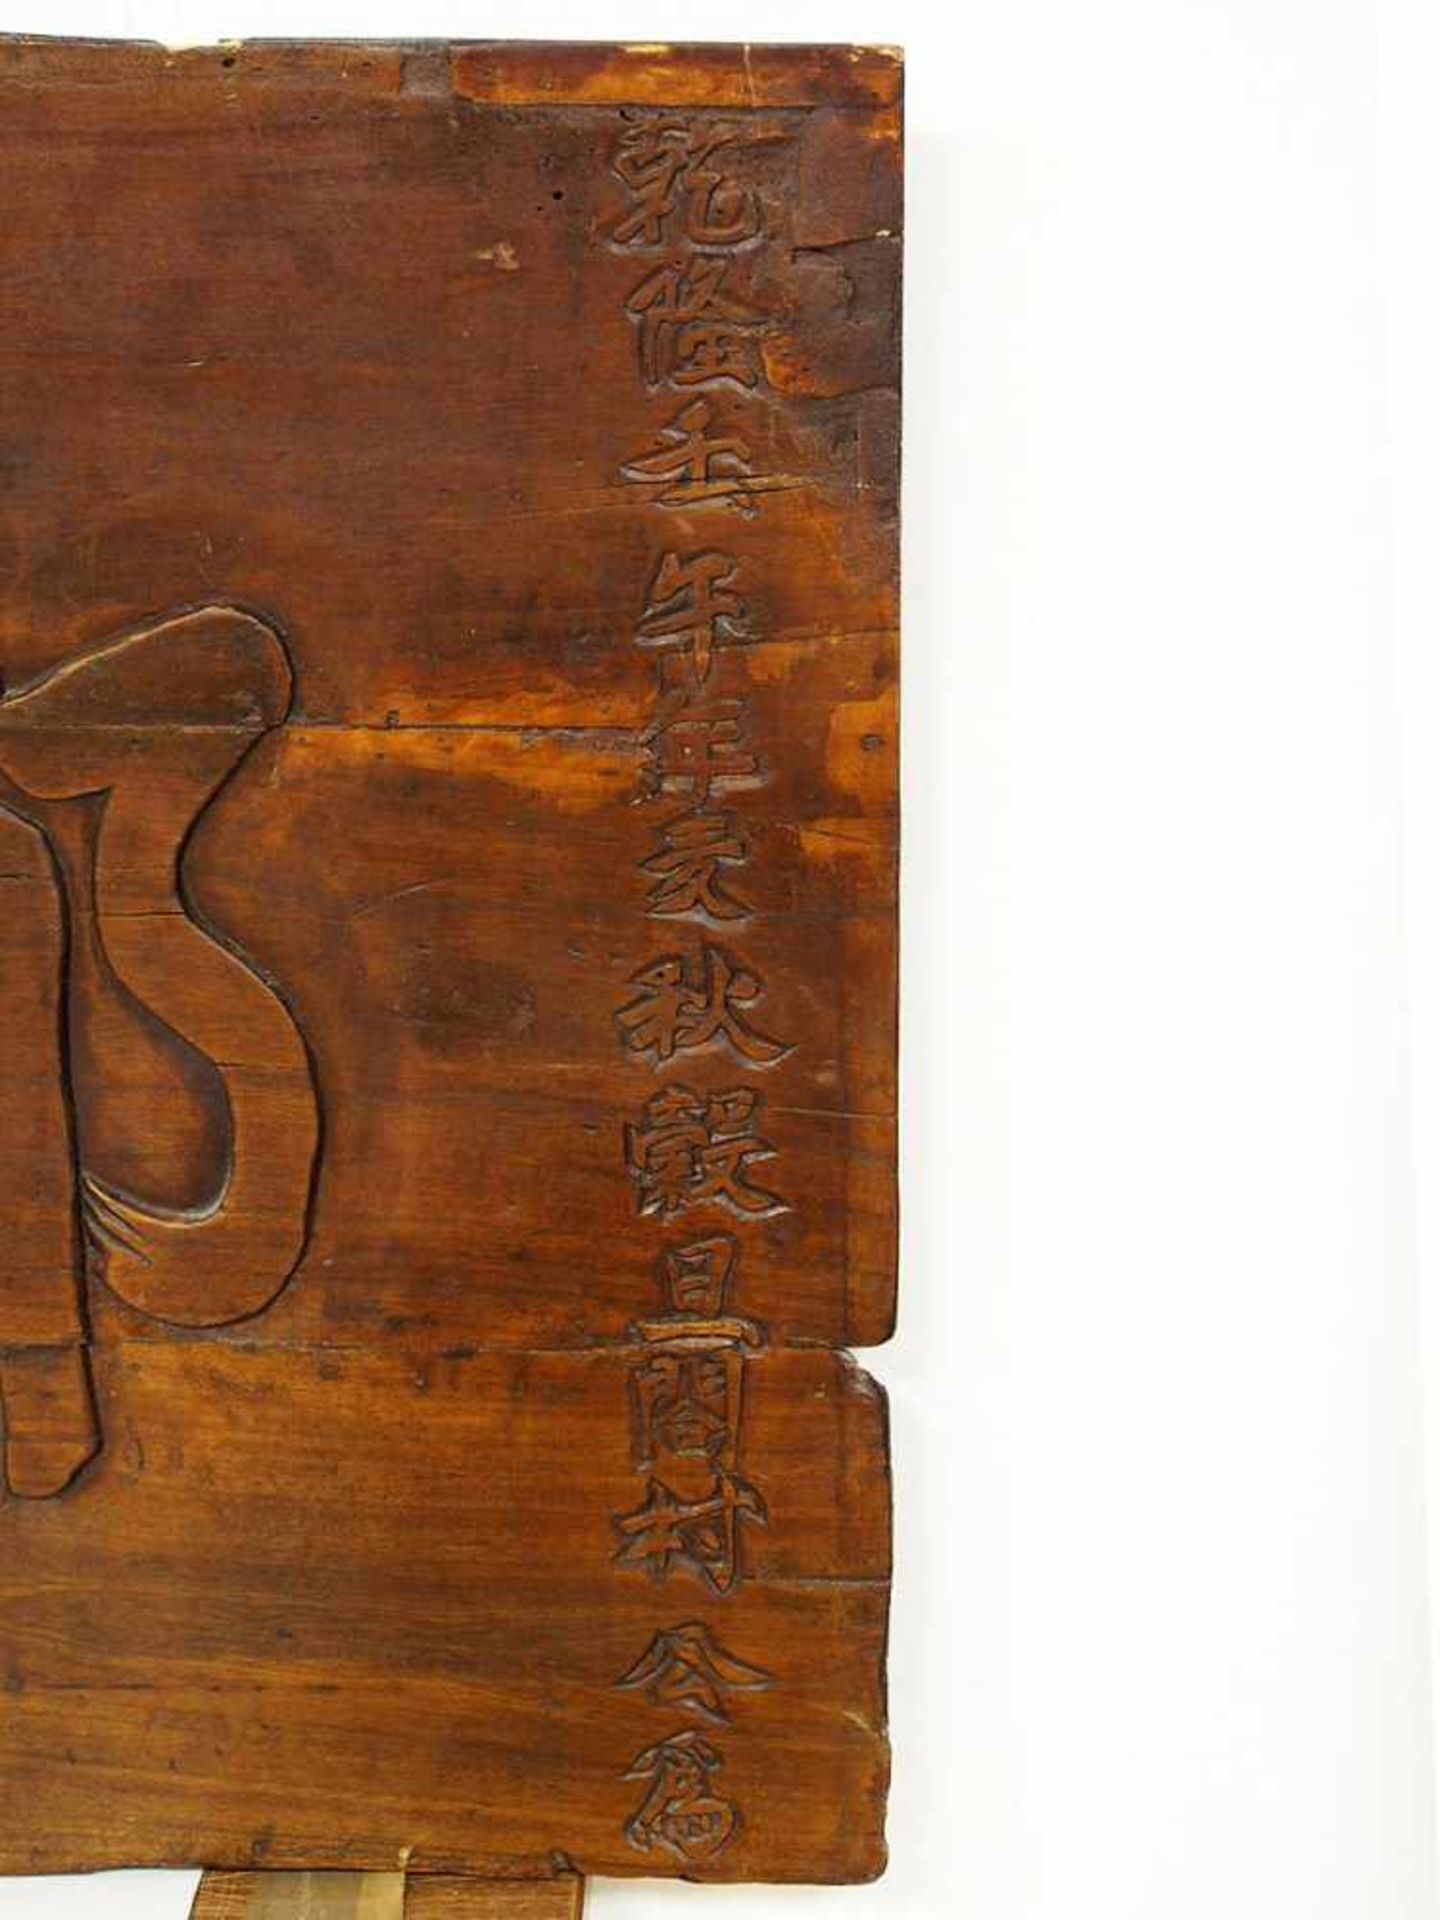 Ladenschild (?)Inschriftenbrett, China, 17./18. Jh., Holz, geschnitzt, 65,5 x 185 cm - Bild 2 aus 3